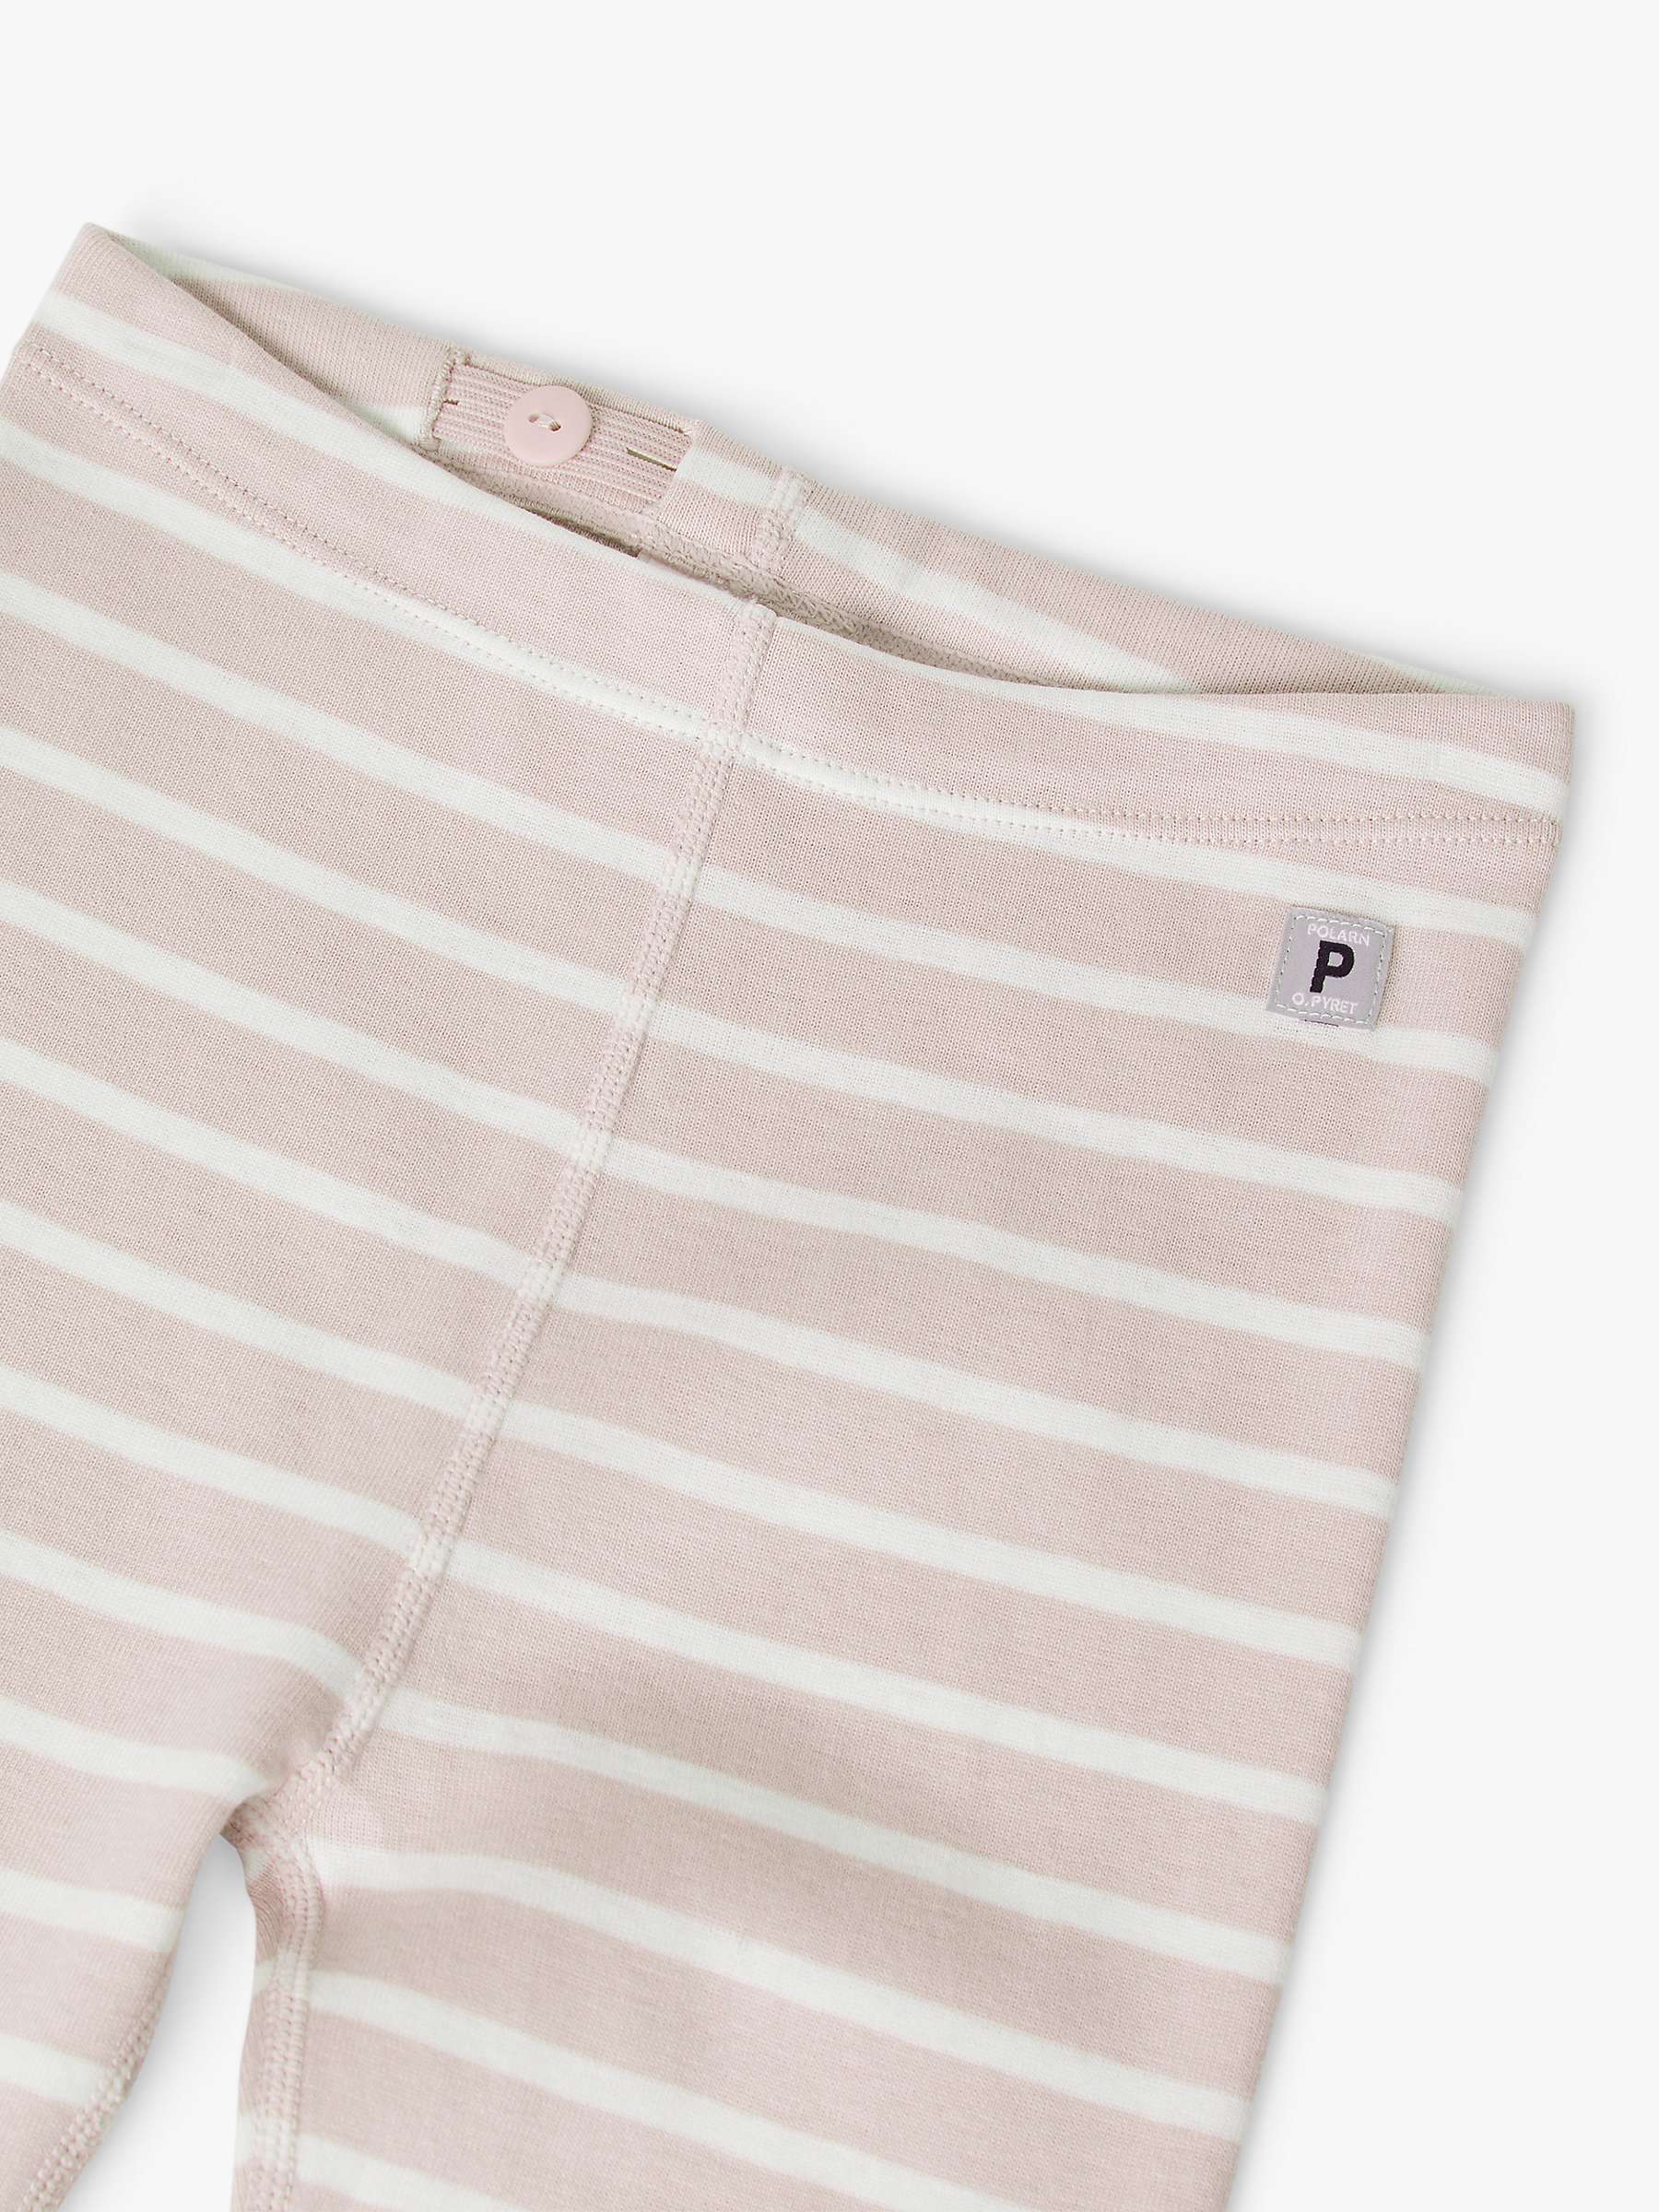 Buy Polarn O. Pyret Kids' GOTS Organic Cotton Stripe Leggings Online at johnlewis.com